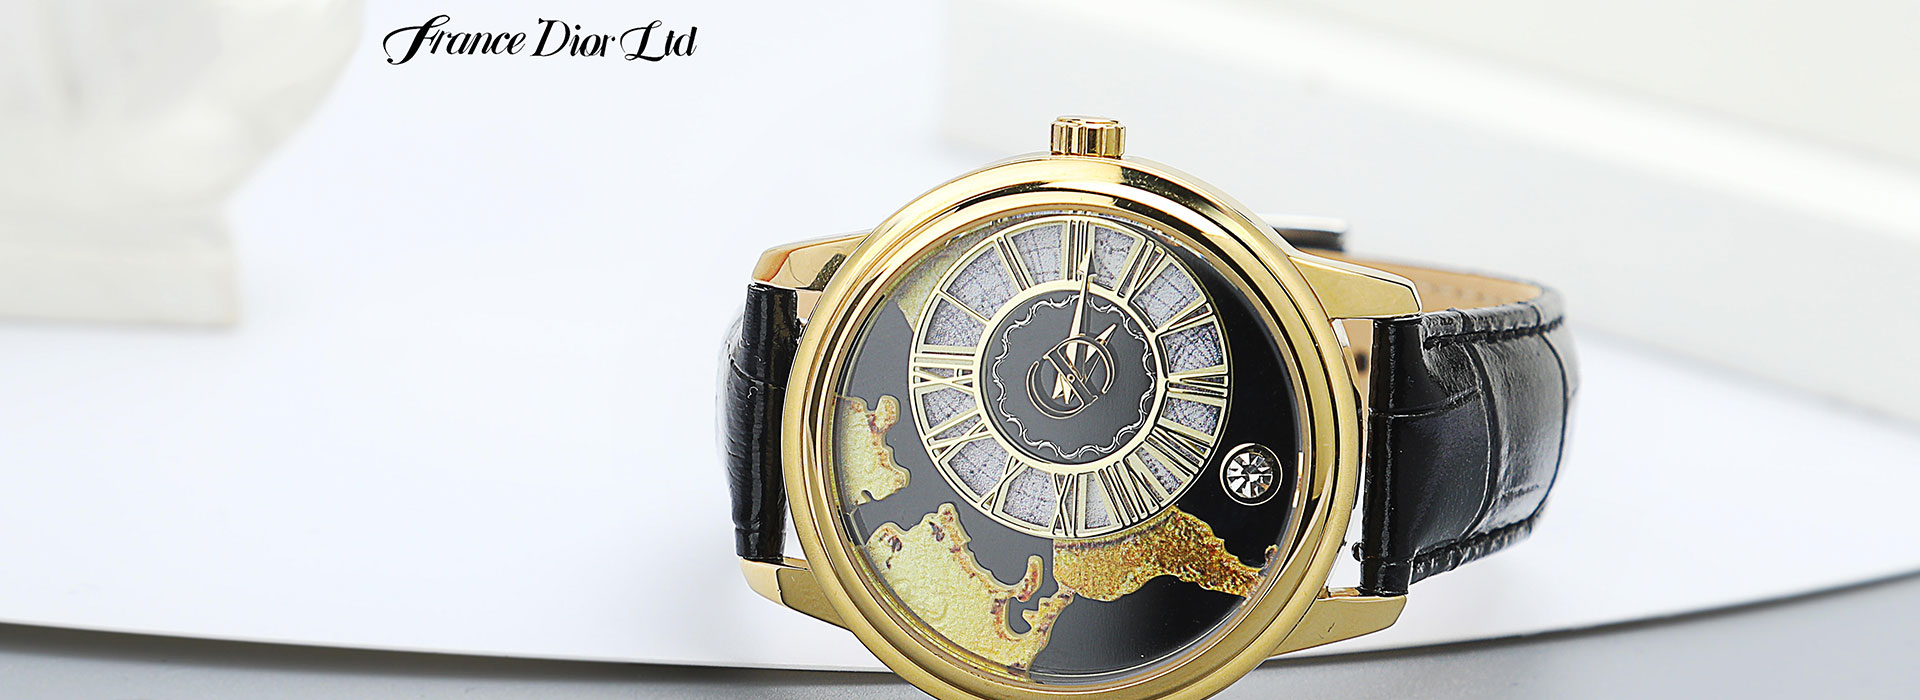 法国迪奥定制腕表【时光旅行者】高端腕表全球限量发售